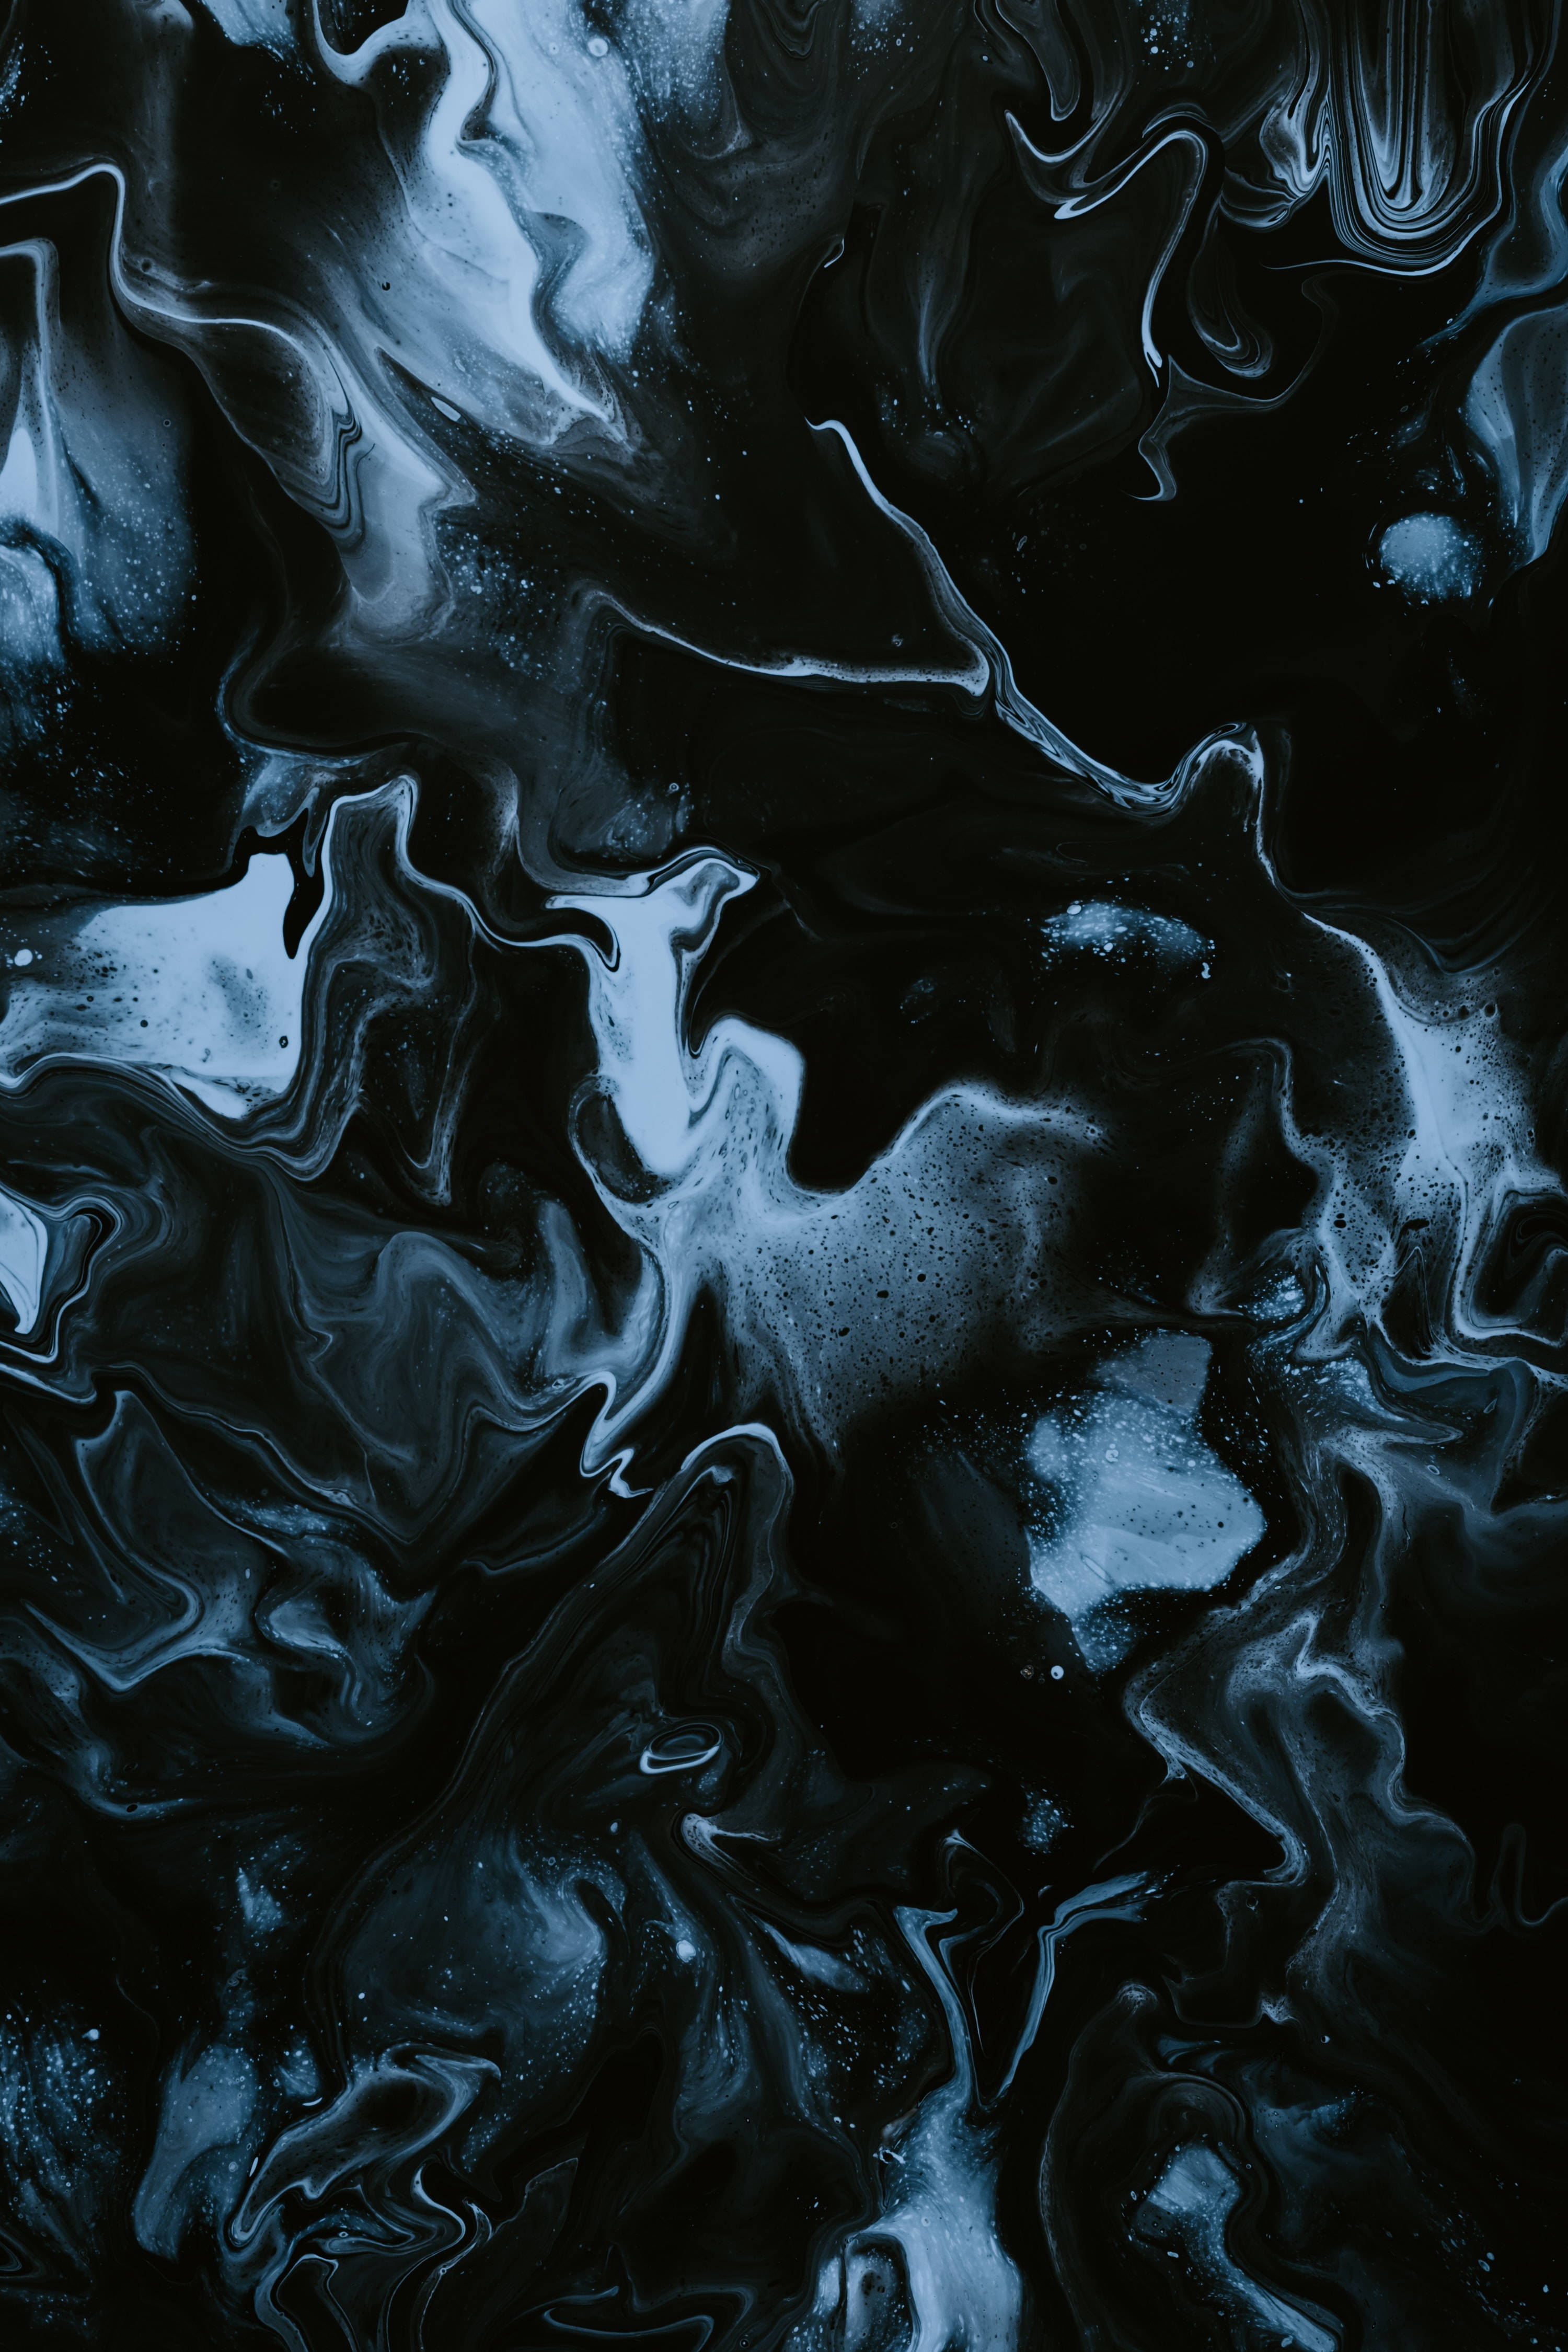 Marmor 4K Æstetisk Mørkt Vand Splash Wallpaper